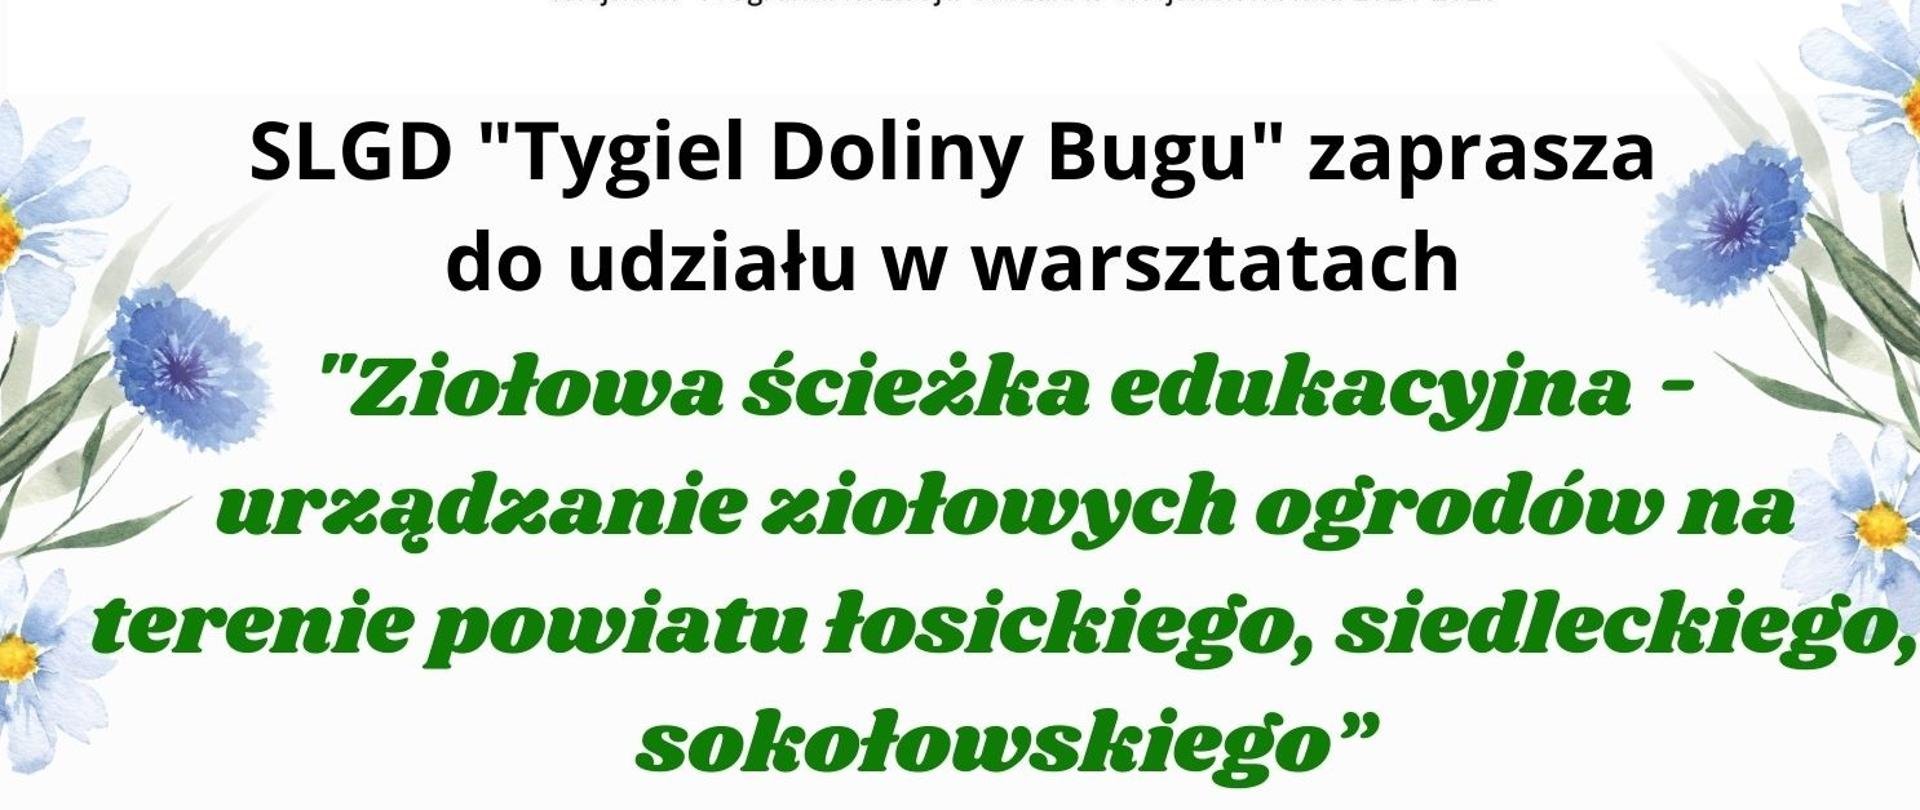 informacja o warsztatach „Ziołowa ścieżka edukacyjna - urządzanie ziołowych ogrodów na terenie powiatu łosickiego, siedleckiego, sokołowskiego”. Warsztaty organizuje LGD Tygiel Doliny Bugu tel. do organizatora 797091197